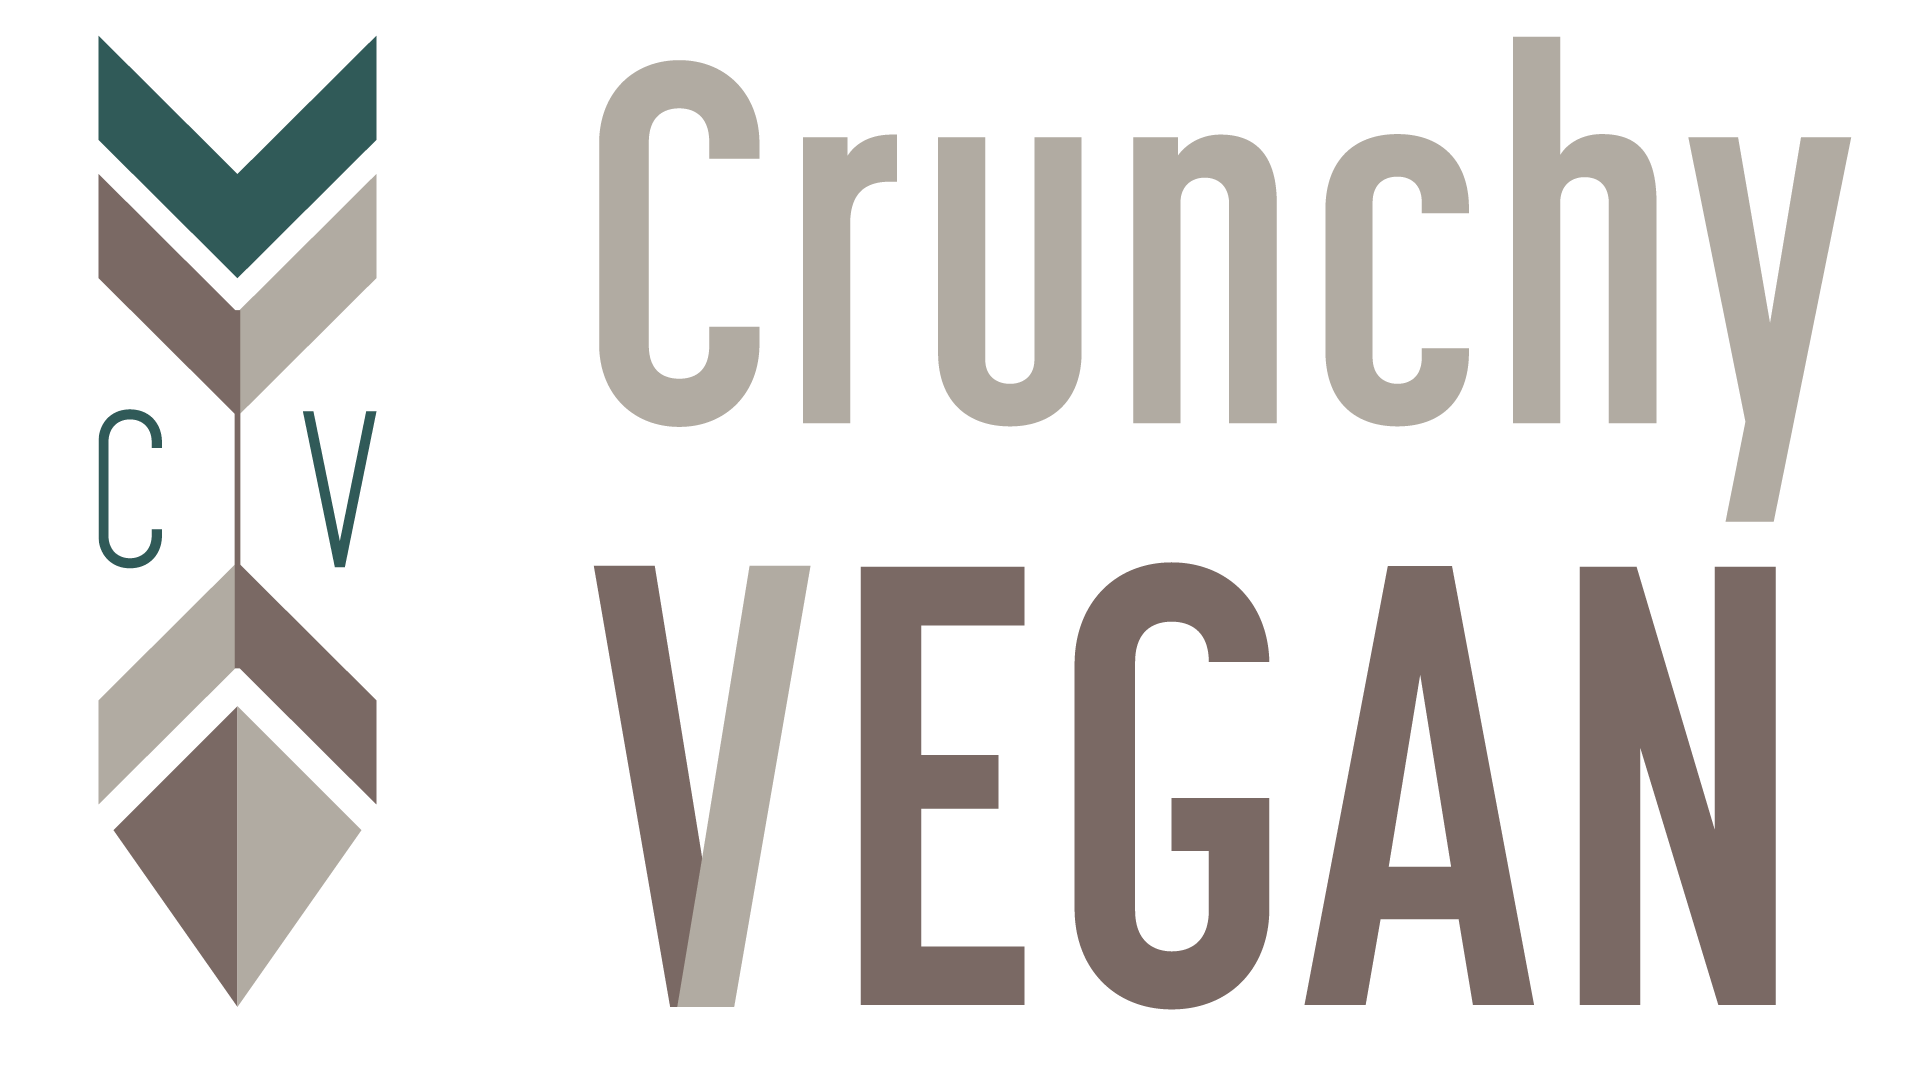 Crunchy Vegan